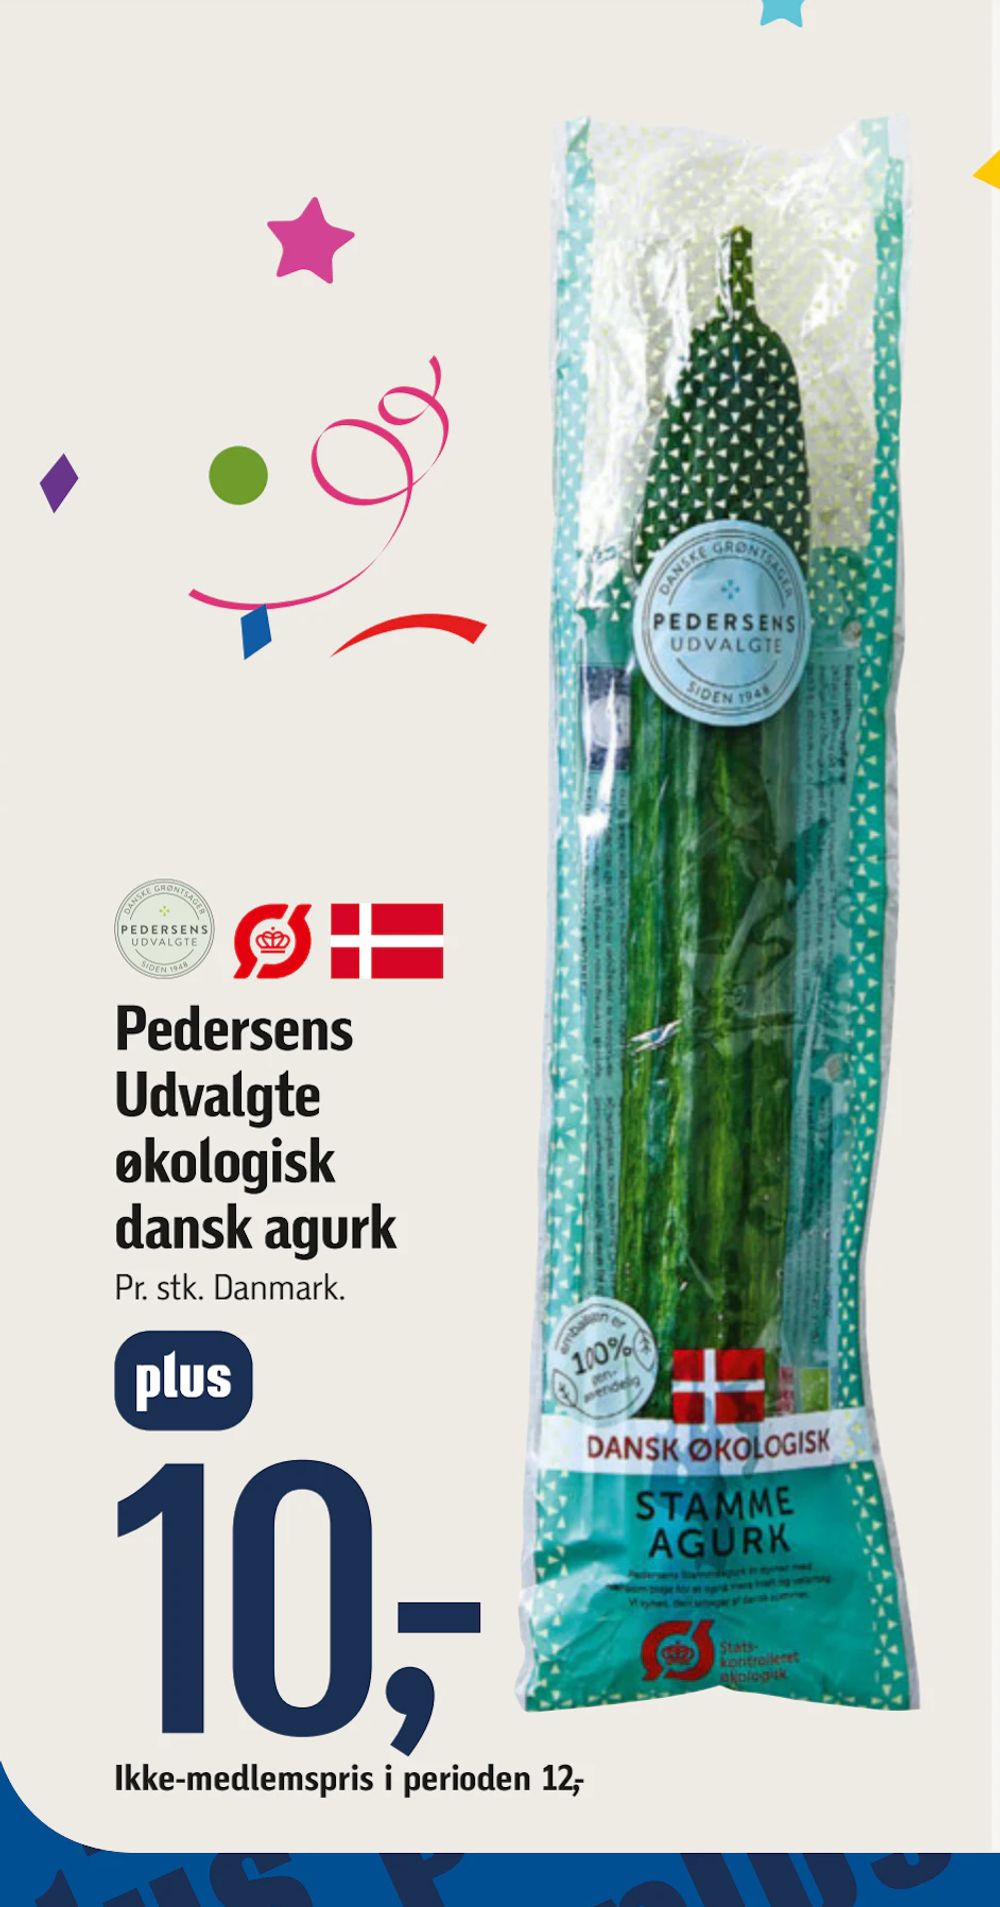 Tilbud på Pedersens Udvalgte økologisk dansk agurk fra føtex til 12 kr.